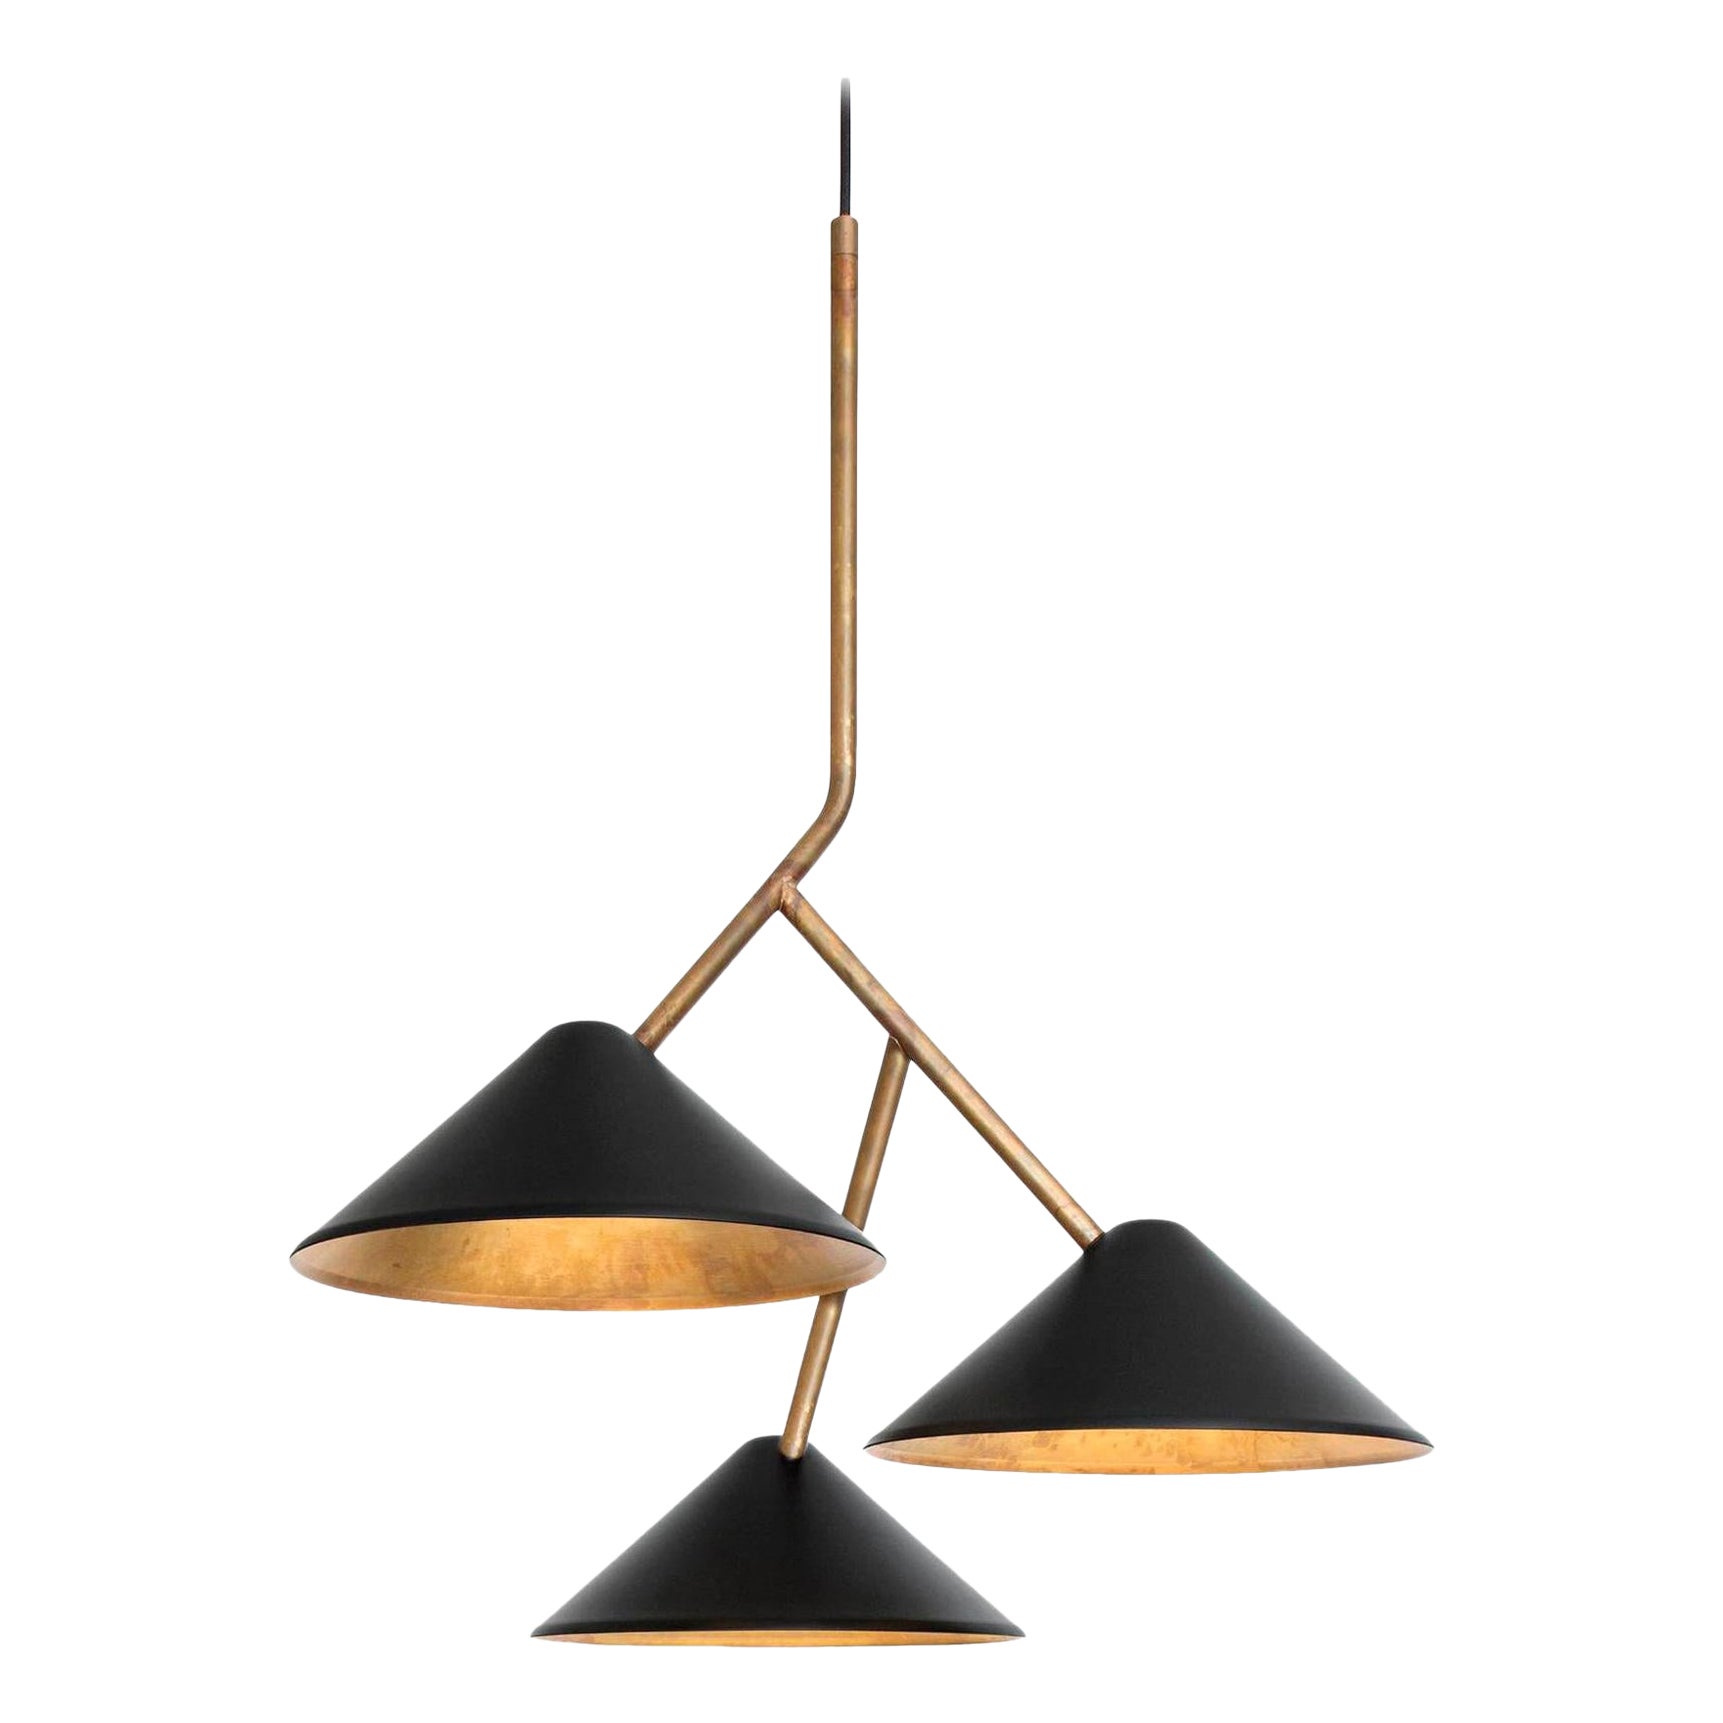 Johan Carpner Grenverk Black Brass Ceiling Lamp by Konsthantverk Tyringe